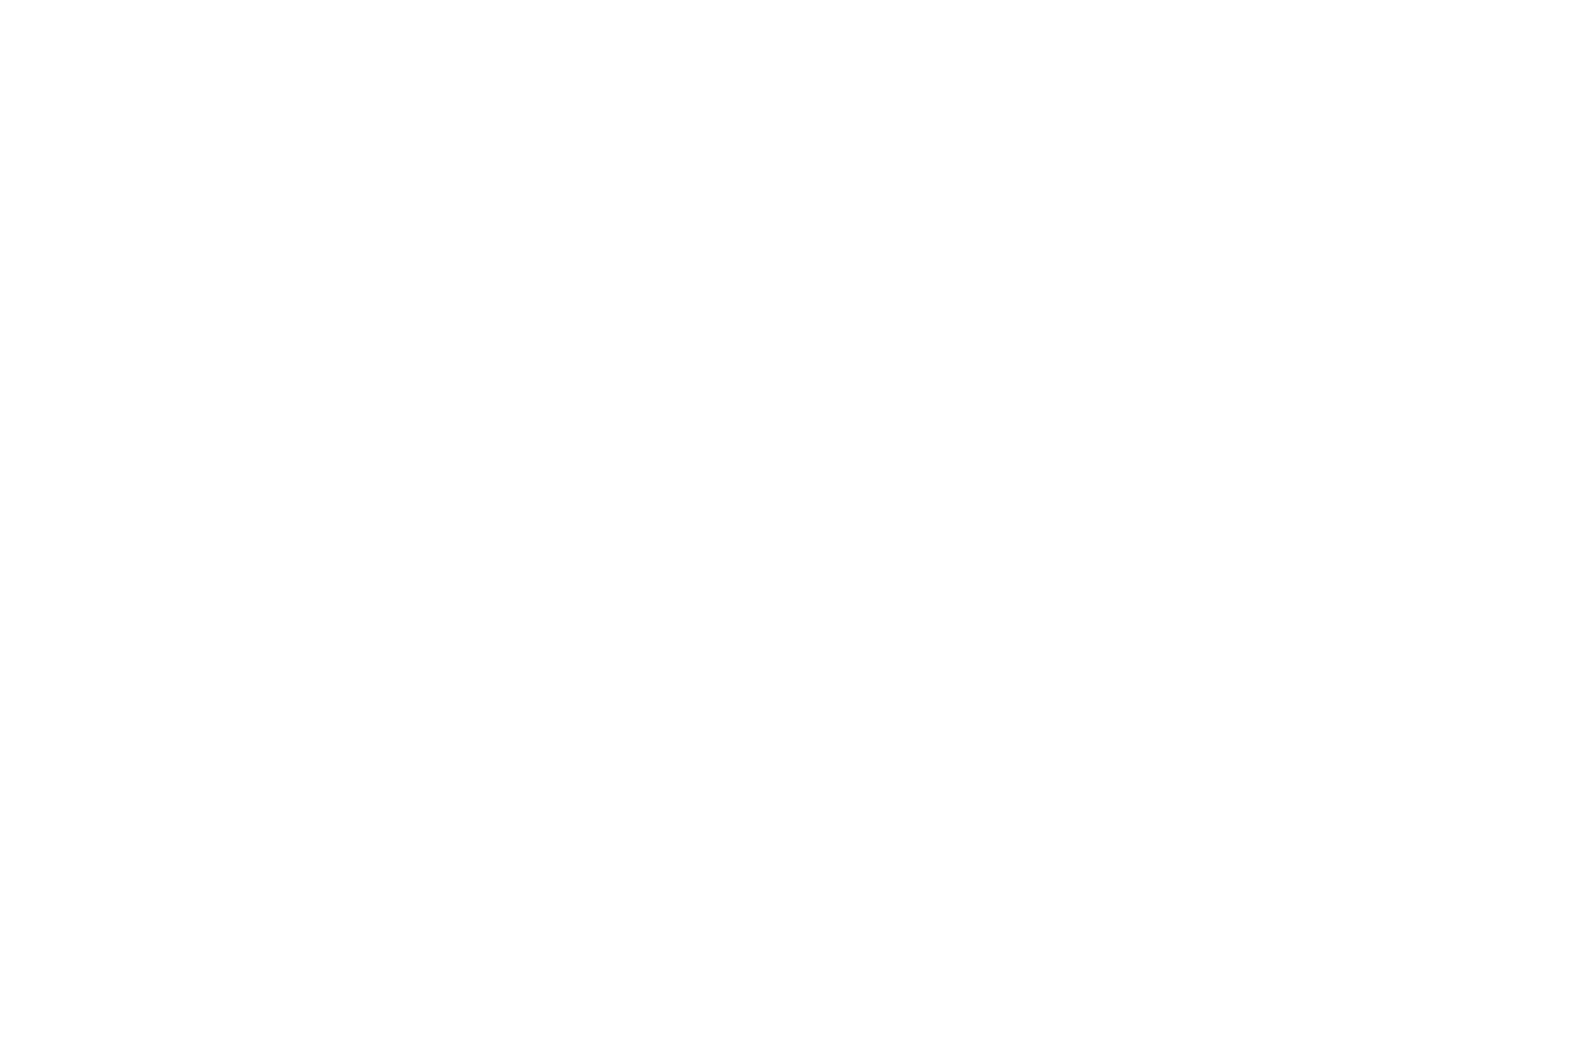 St. James's Place logo pour fonds sombres (PNG transparent)